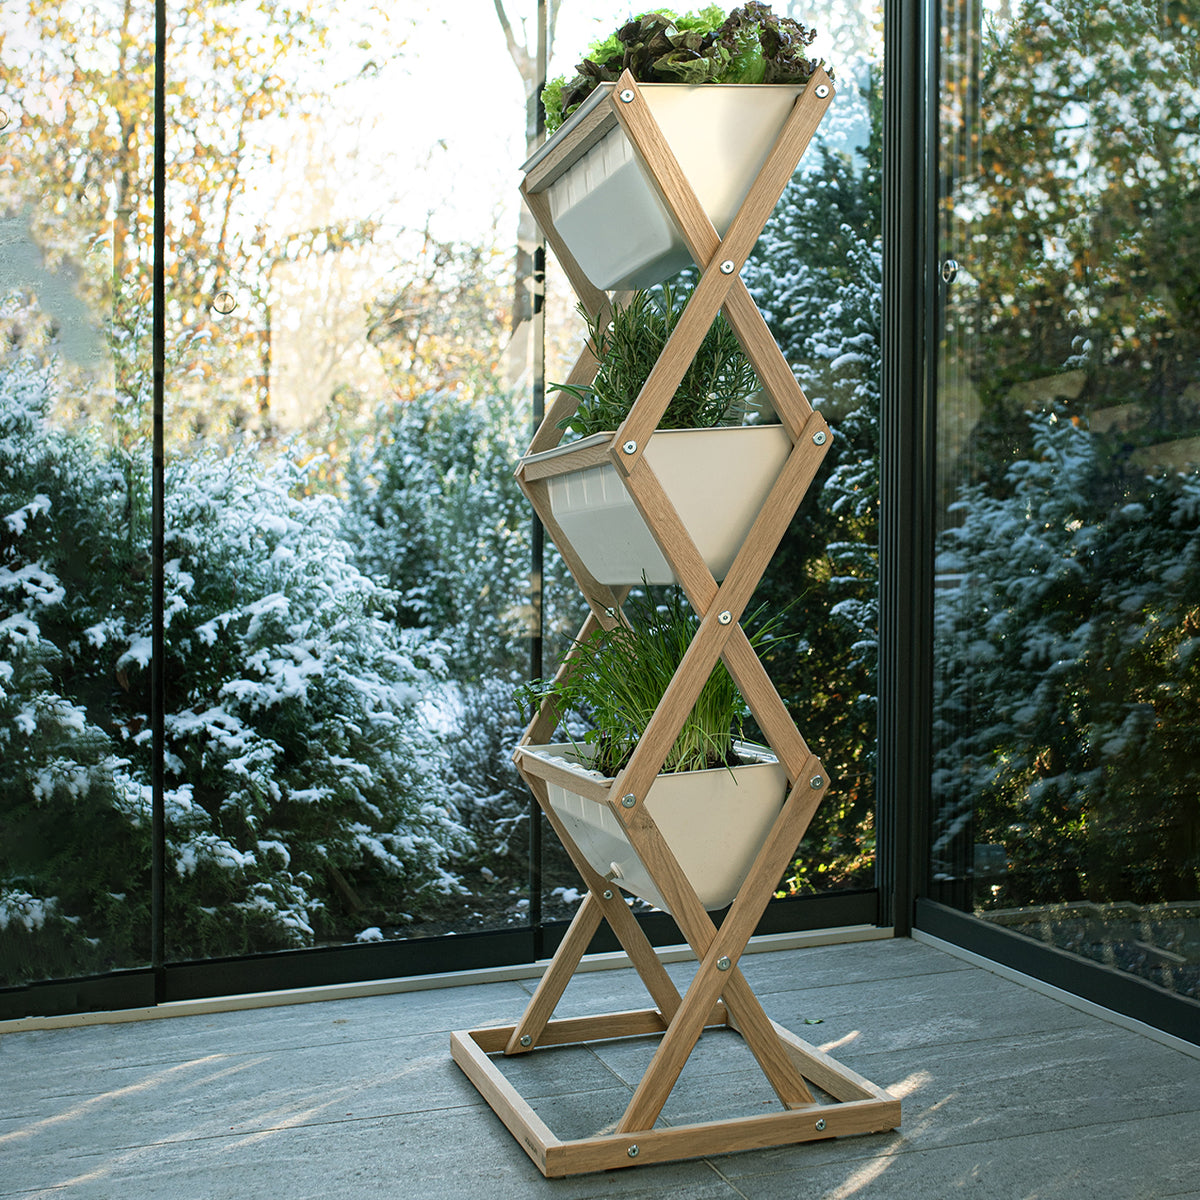 Blumenkasten 'Vertical Garden' | Eichenholz und ASA/ABS Kunststoff | in verschiedenen Größen | Made in Germany